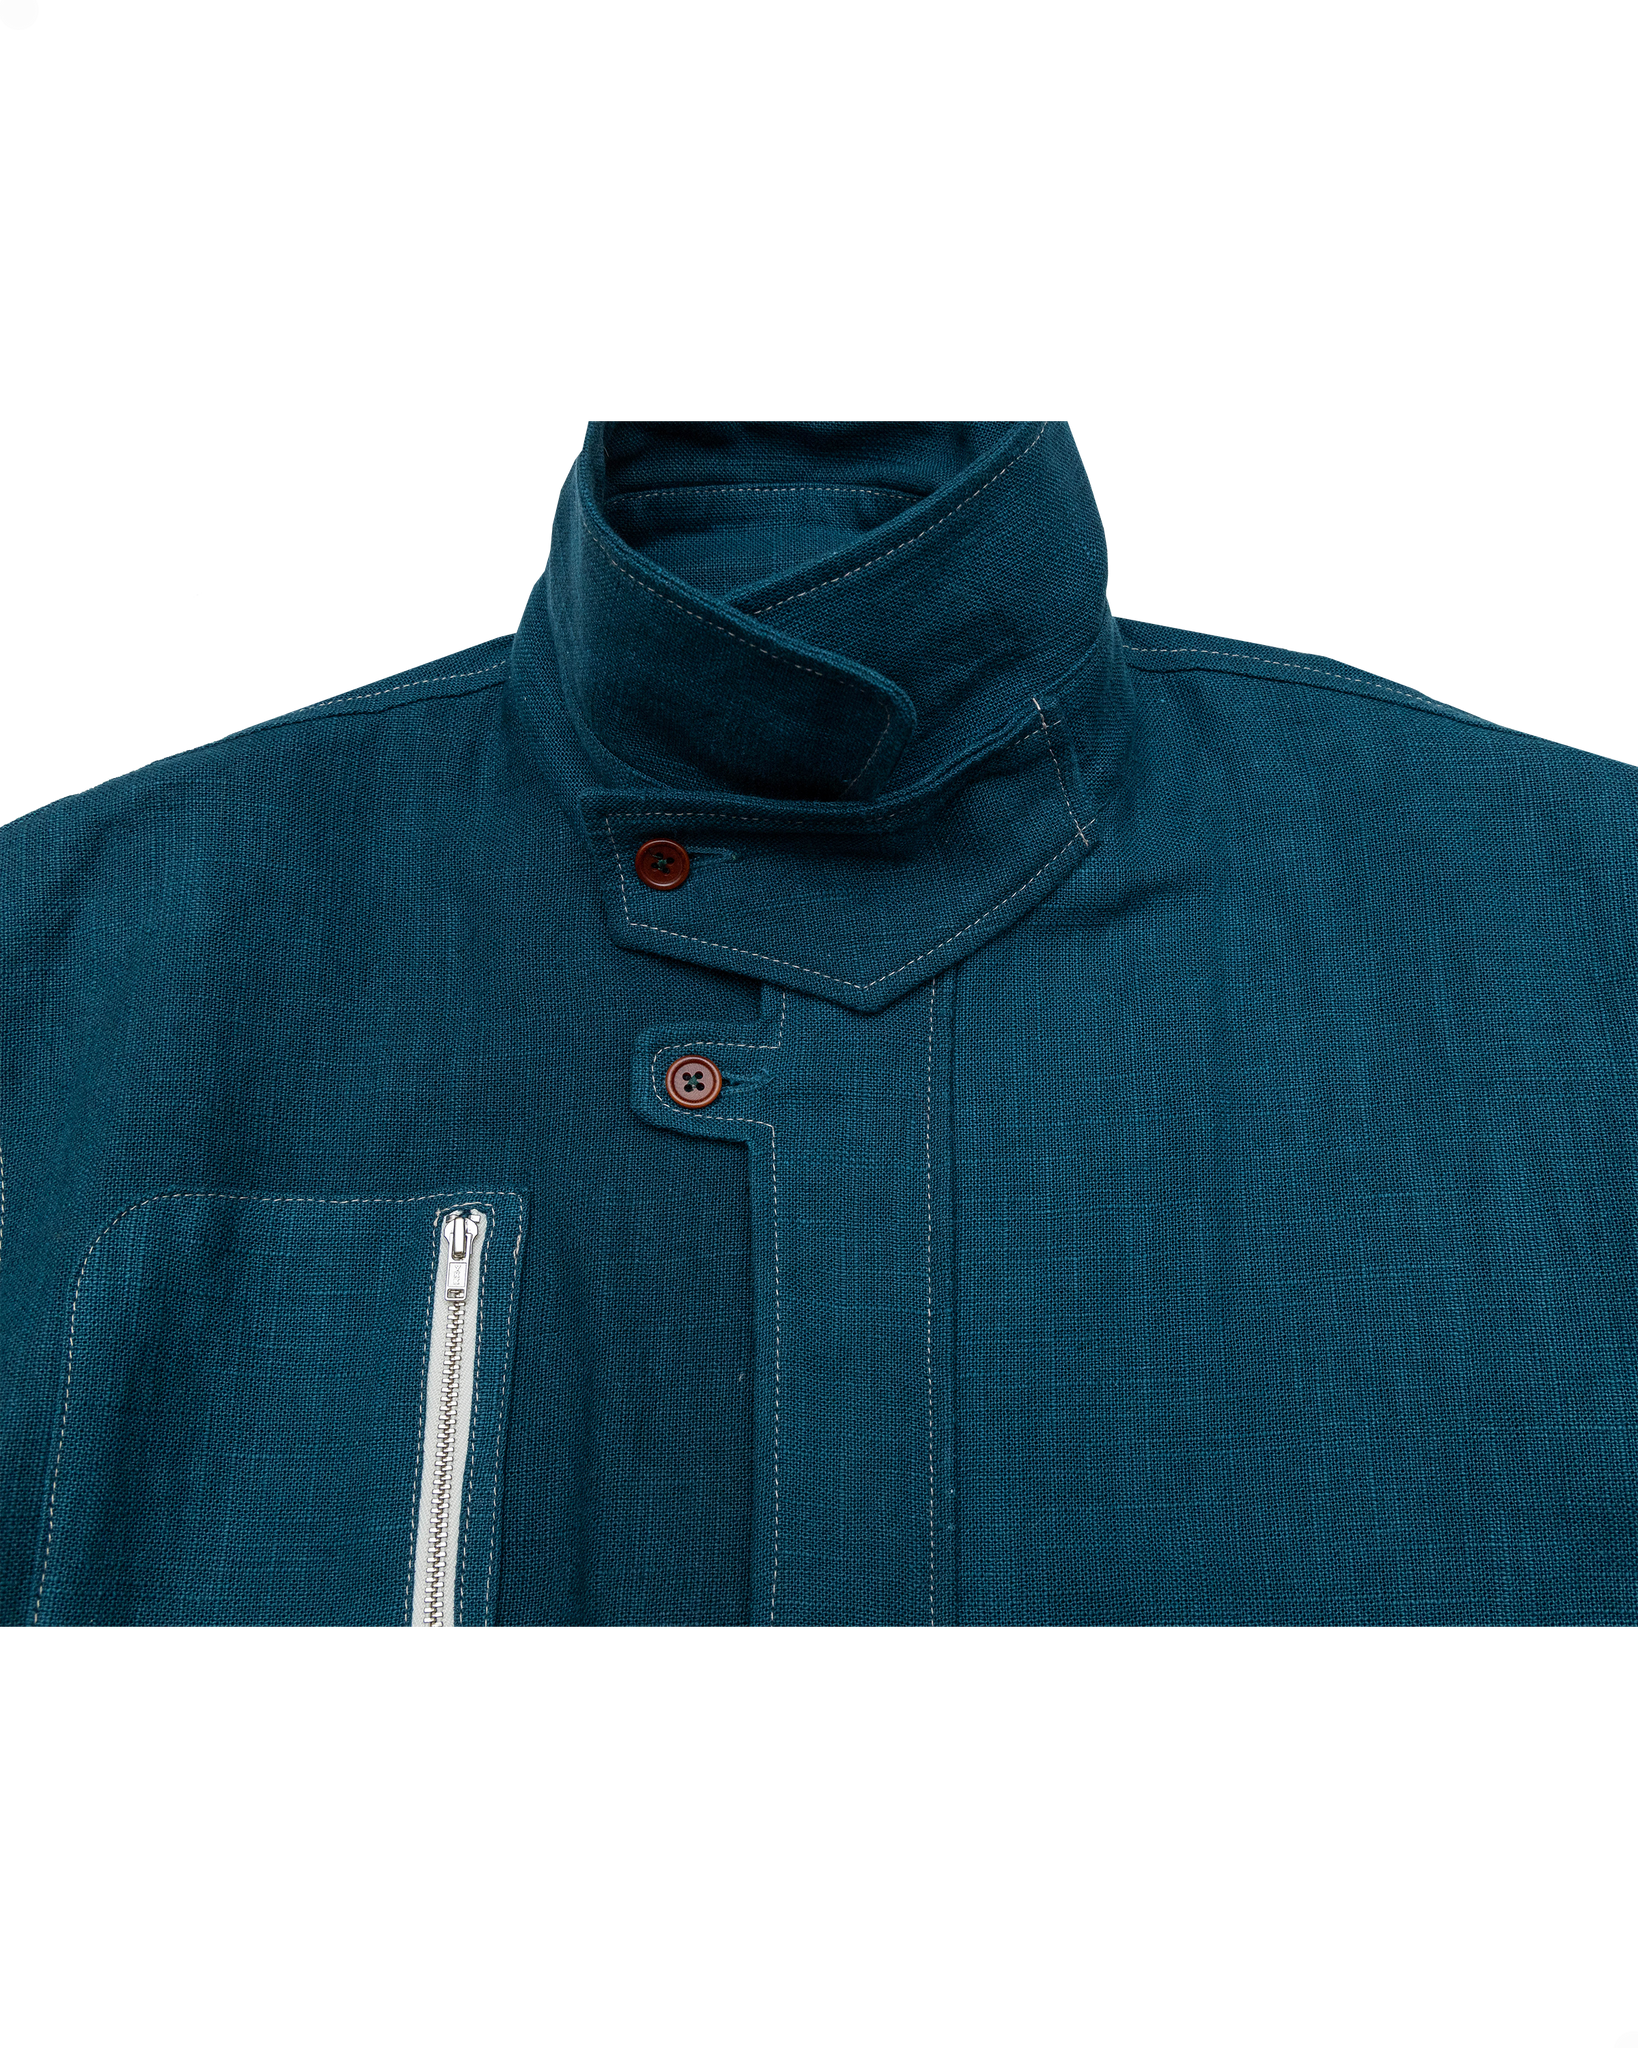 Pine Blouson Jacket: Blue Enzyme